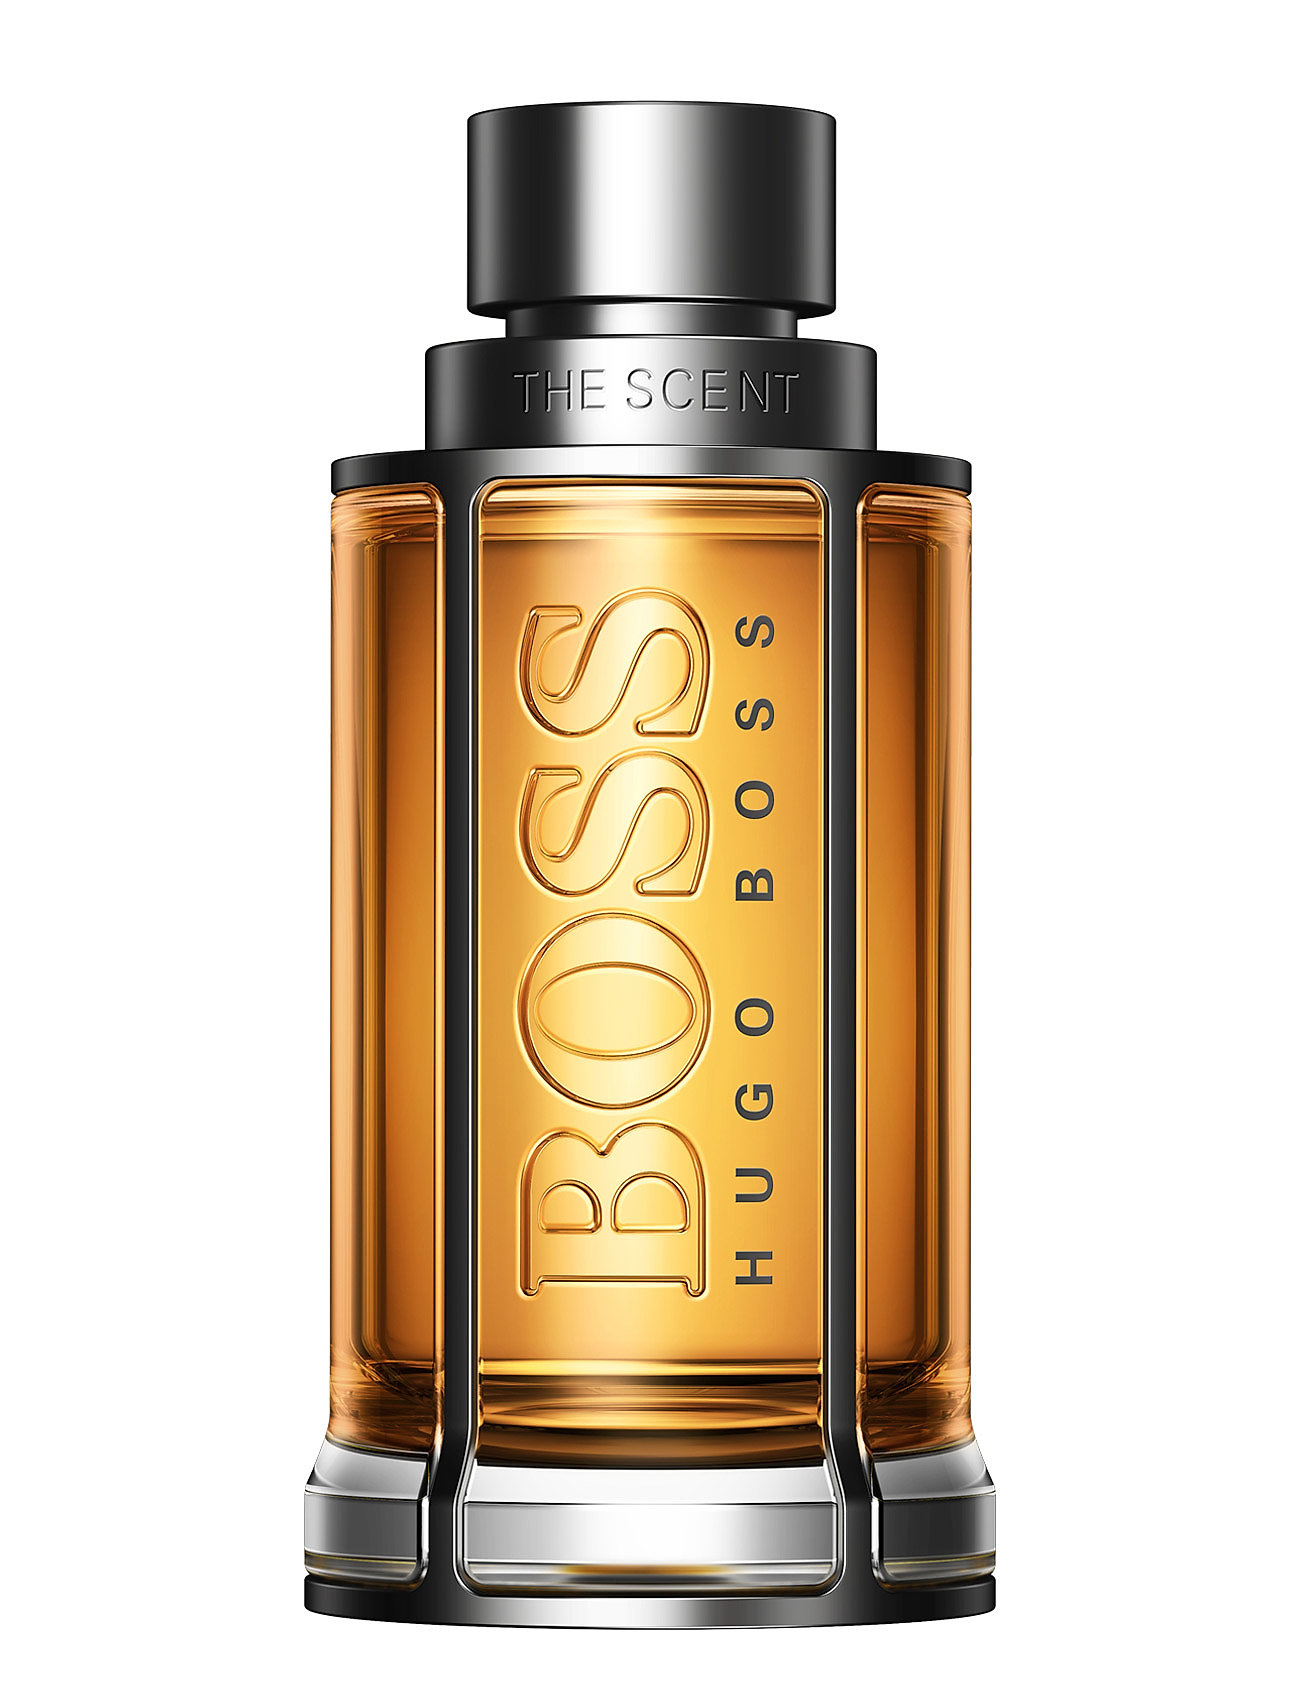 The Scent Eau De Toilette Hajuvesi Eau De Parfum Nude Hugo Boss Fragrance